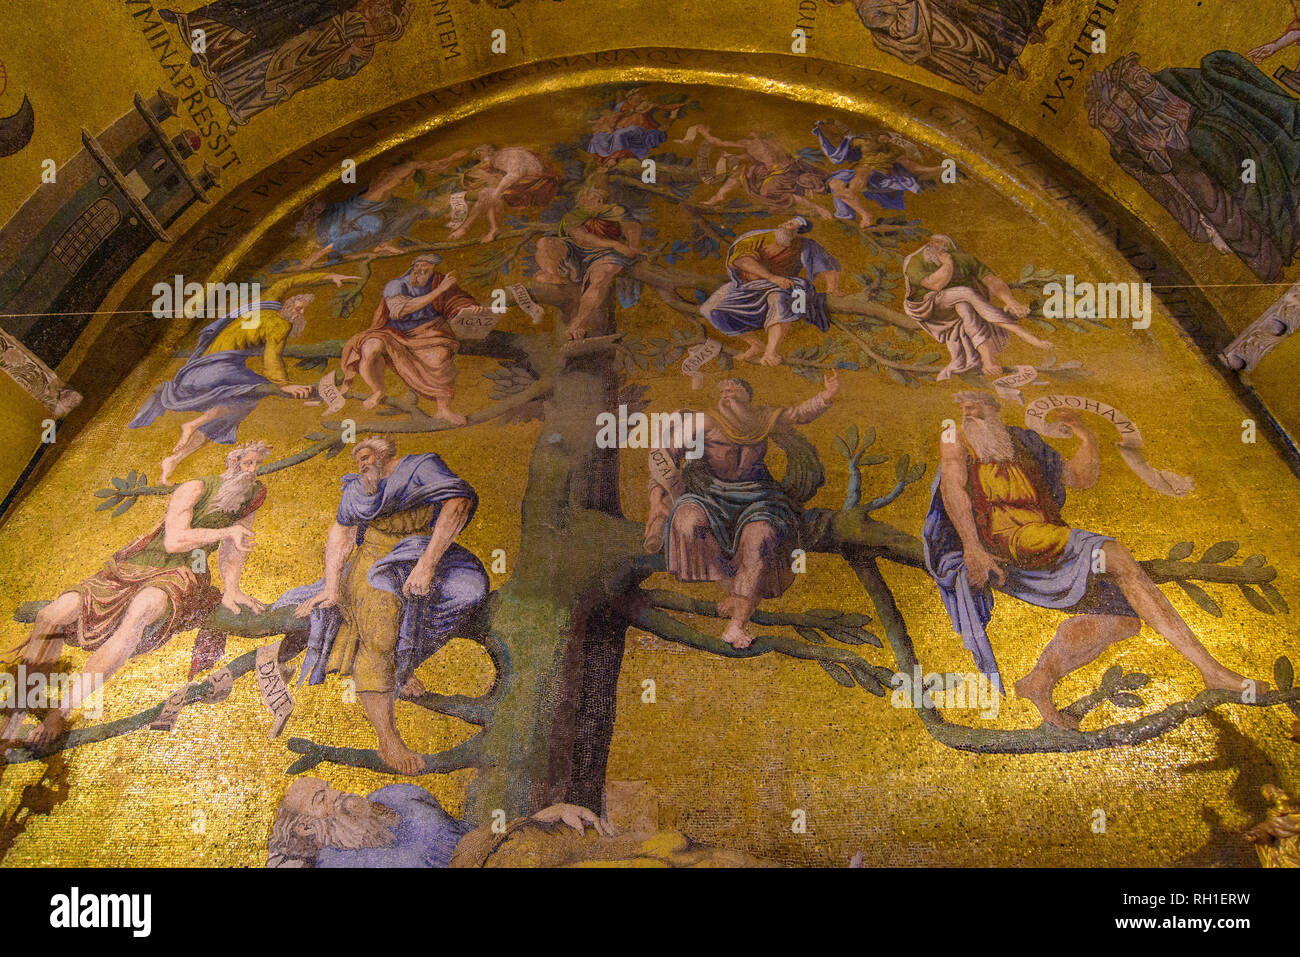 La decorazione a mosaico arte dell'interno del la Basilica di San Marco, la chiesa cattedrale di Venezia, Italia Foto Stock